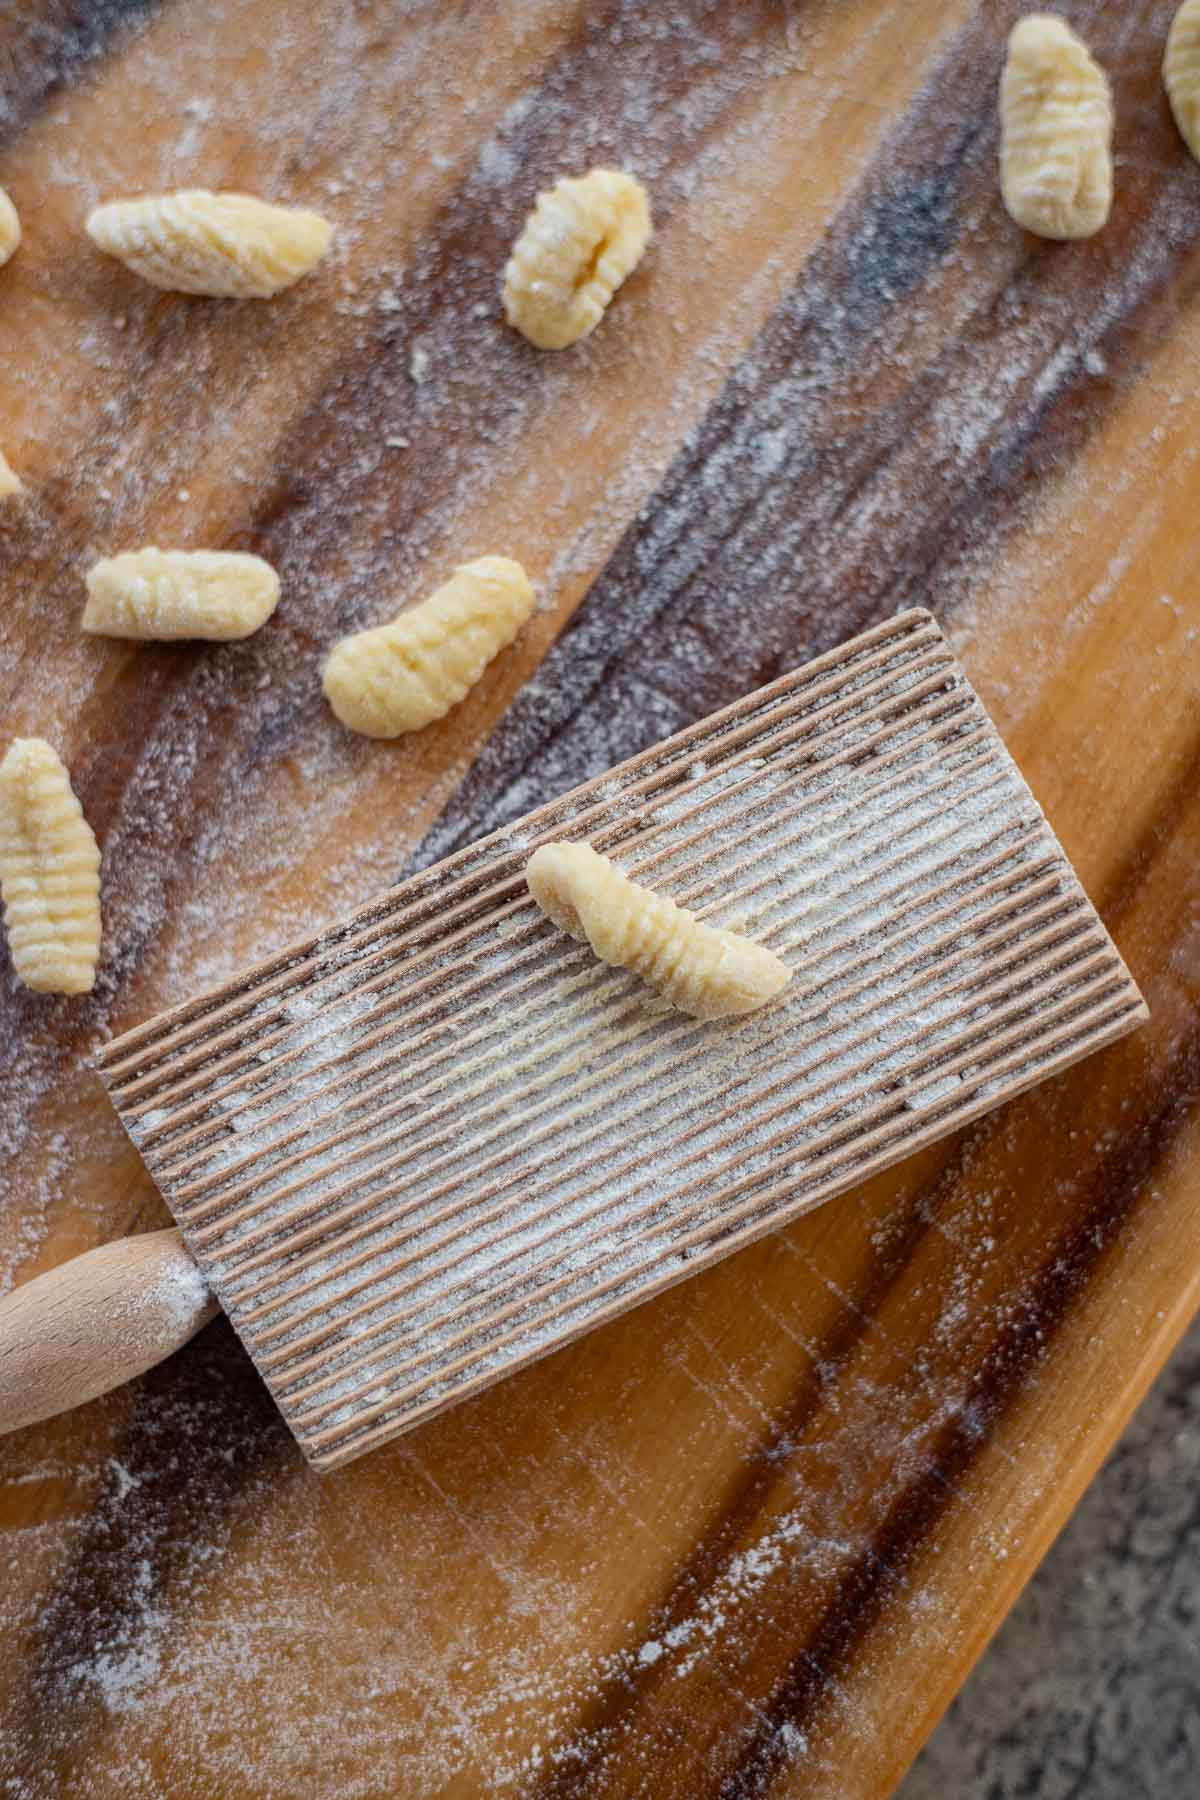 potato pasta on a gnocchi board with more pasta around it